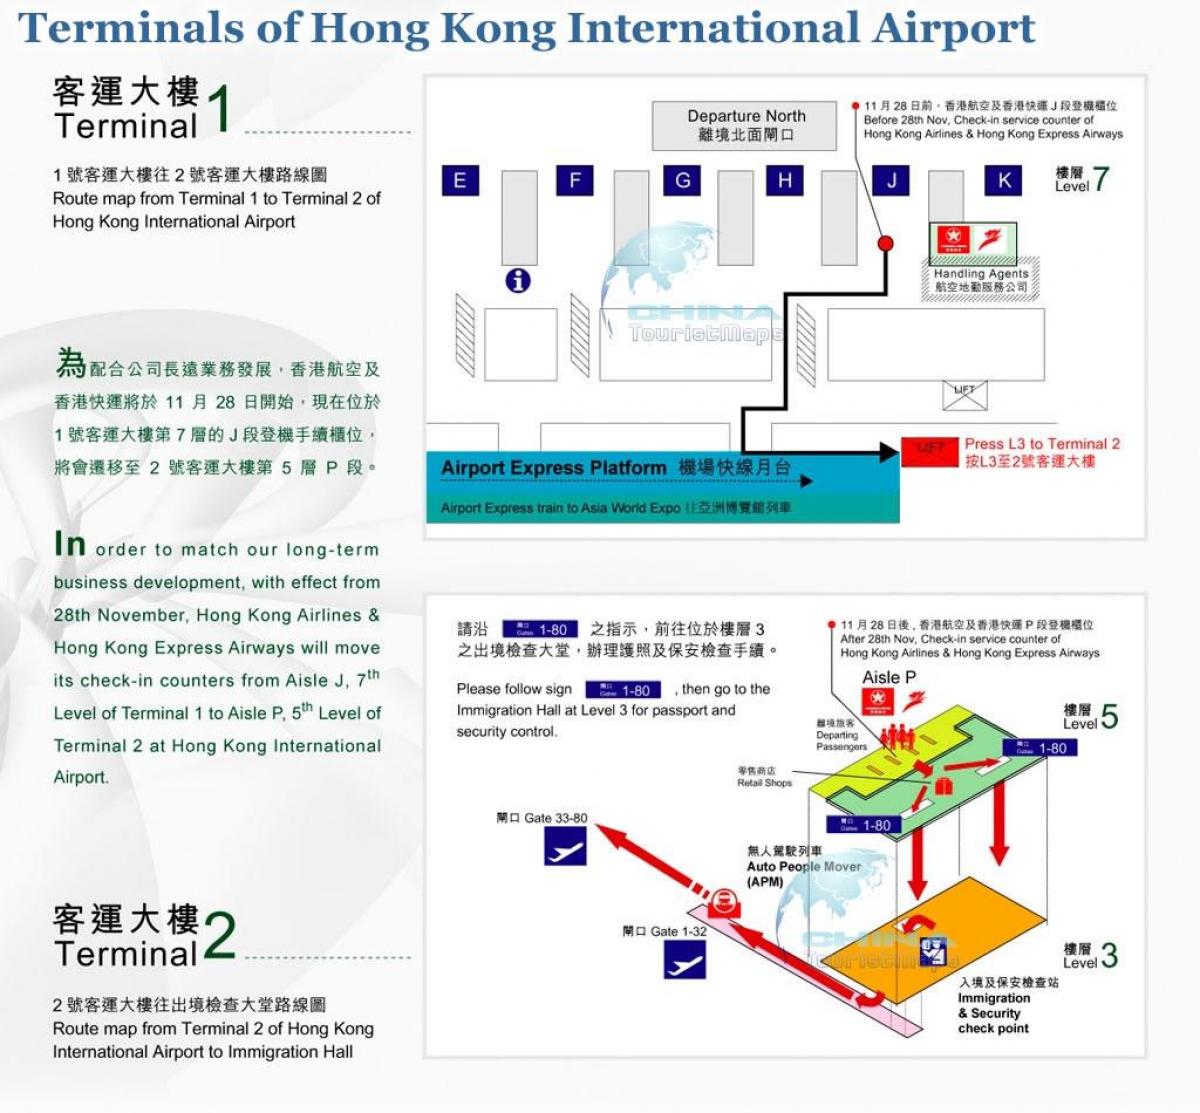 Hong Kong airport terminal 2 del mapa